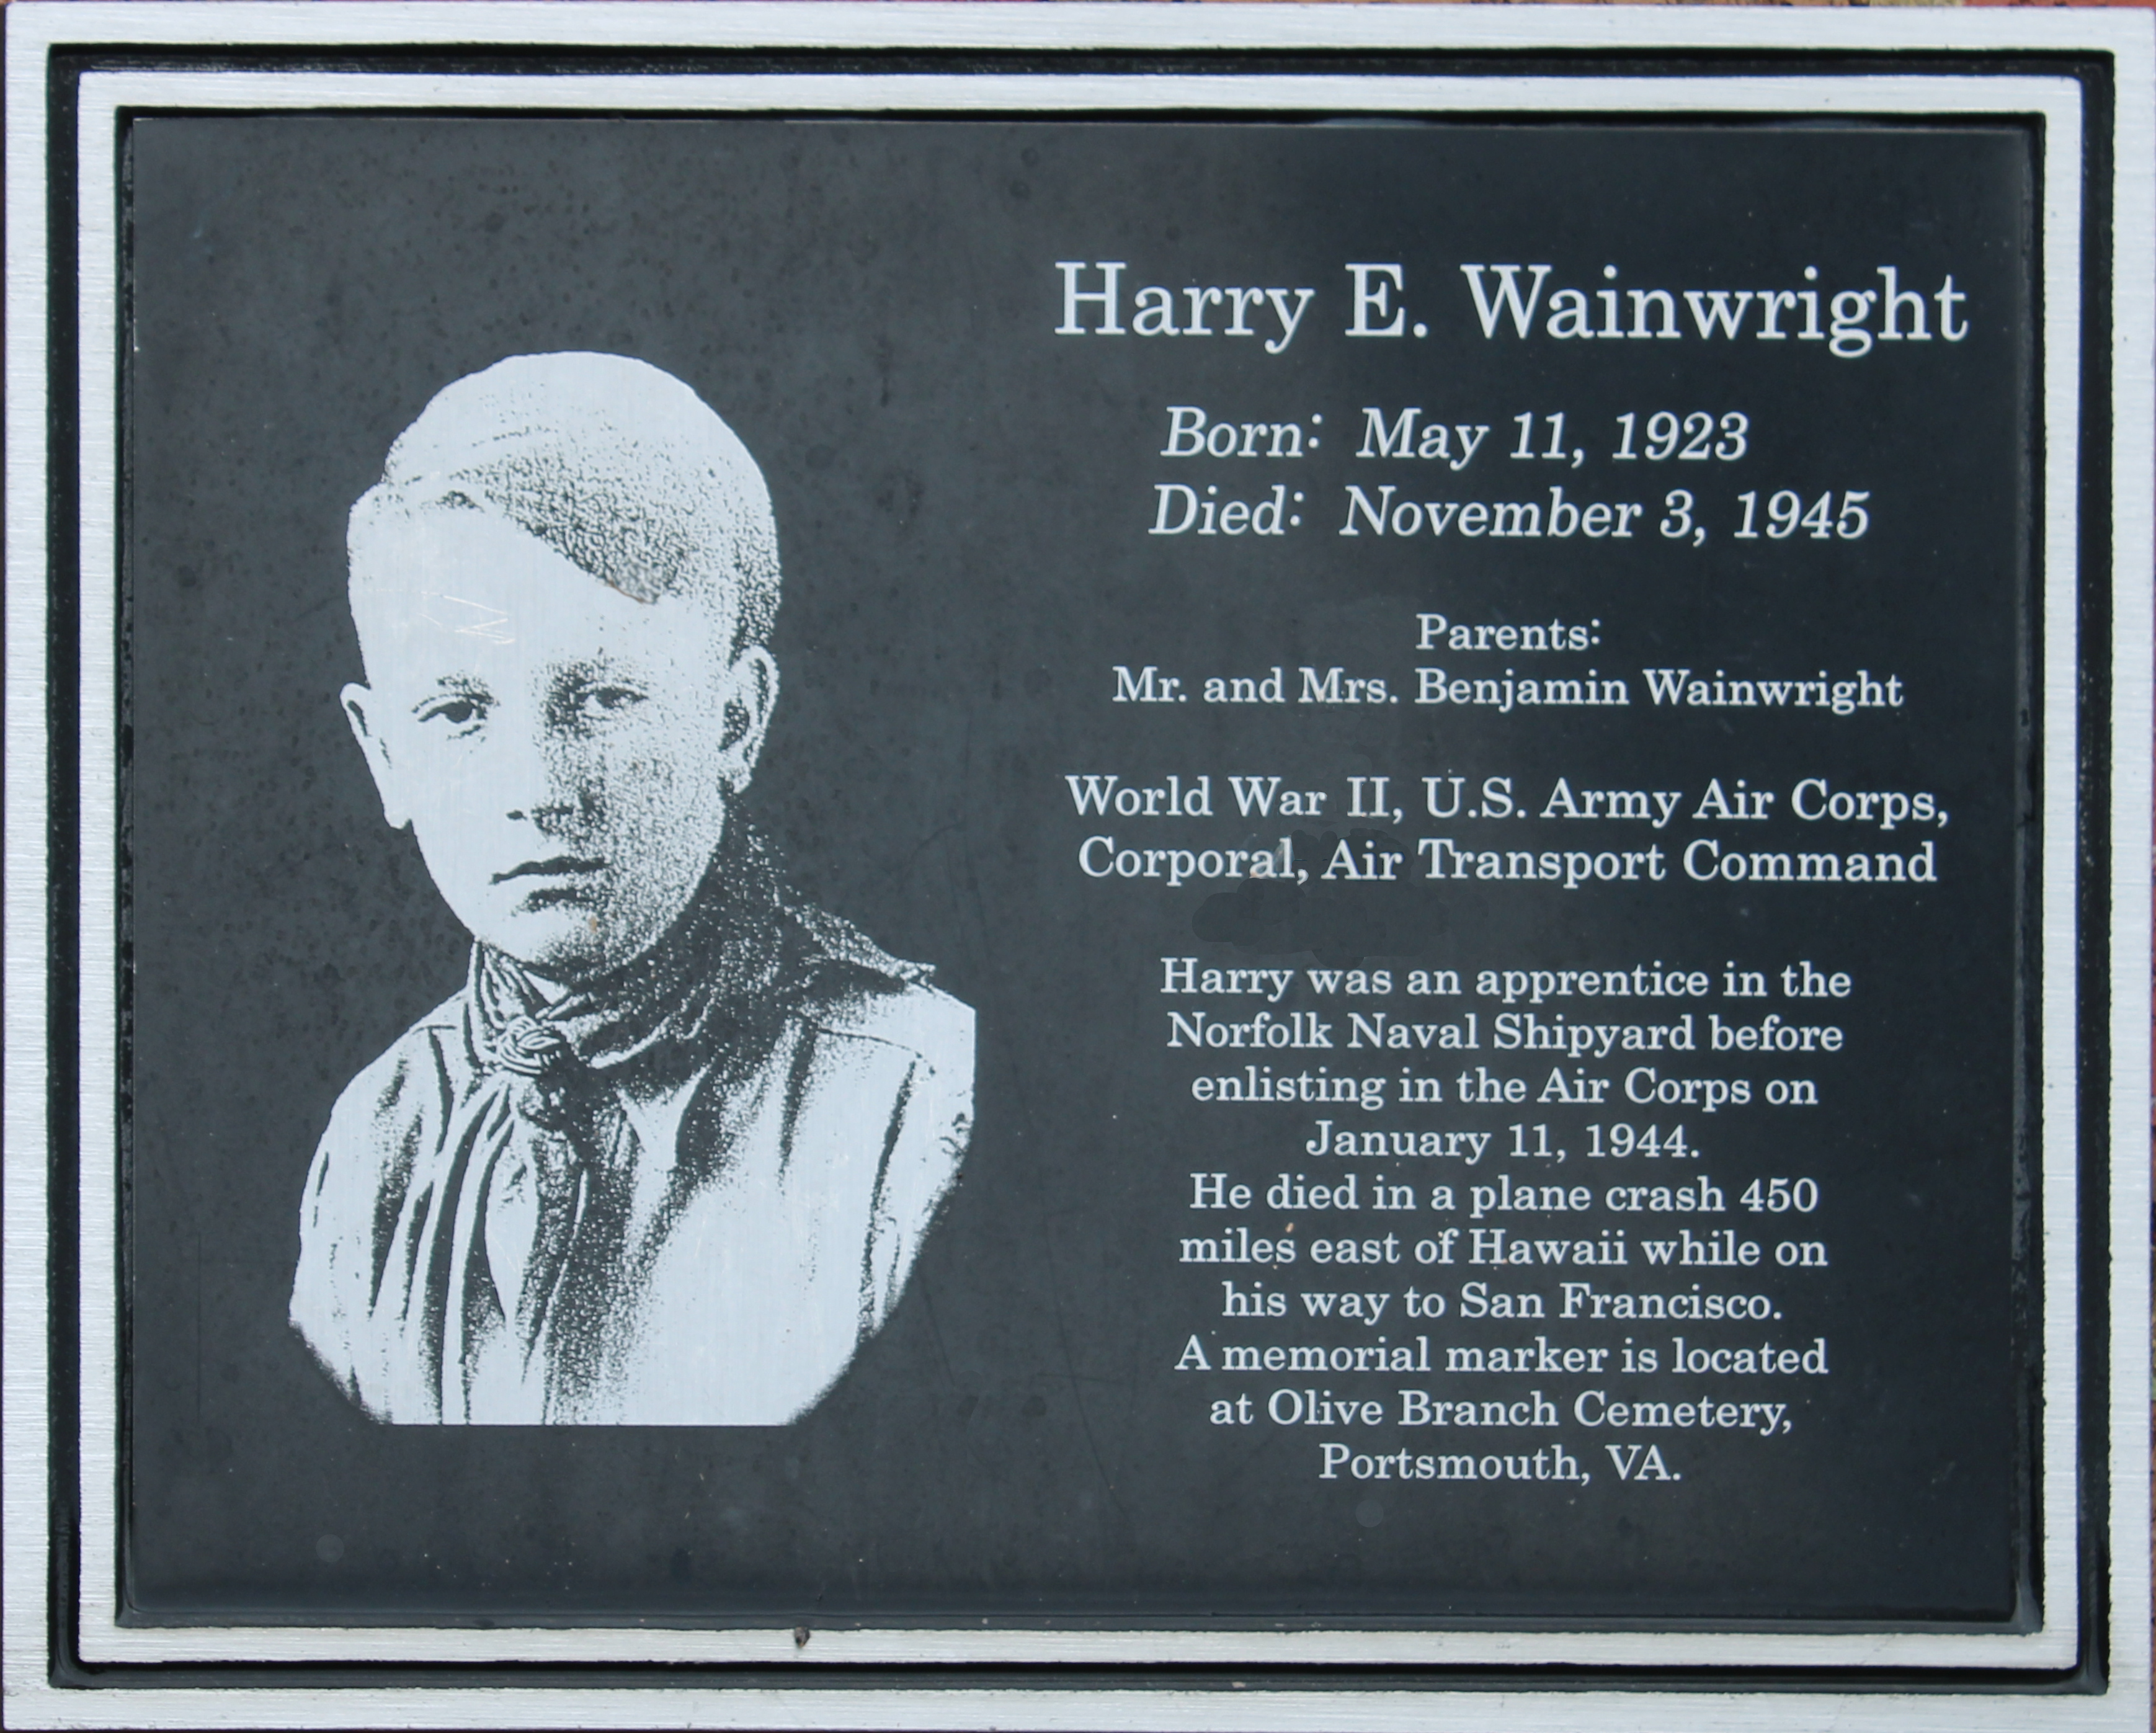 Harry Wainwright